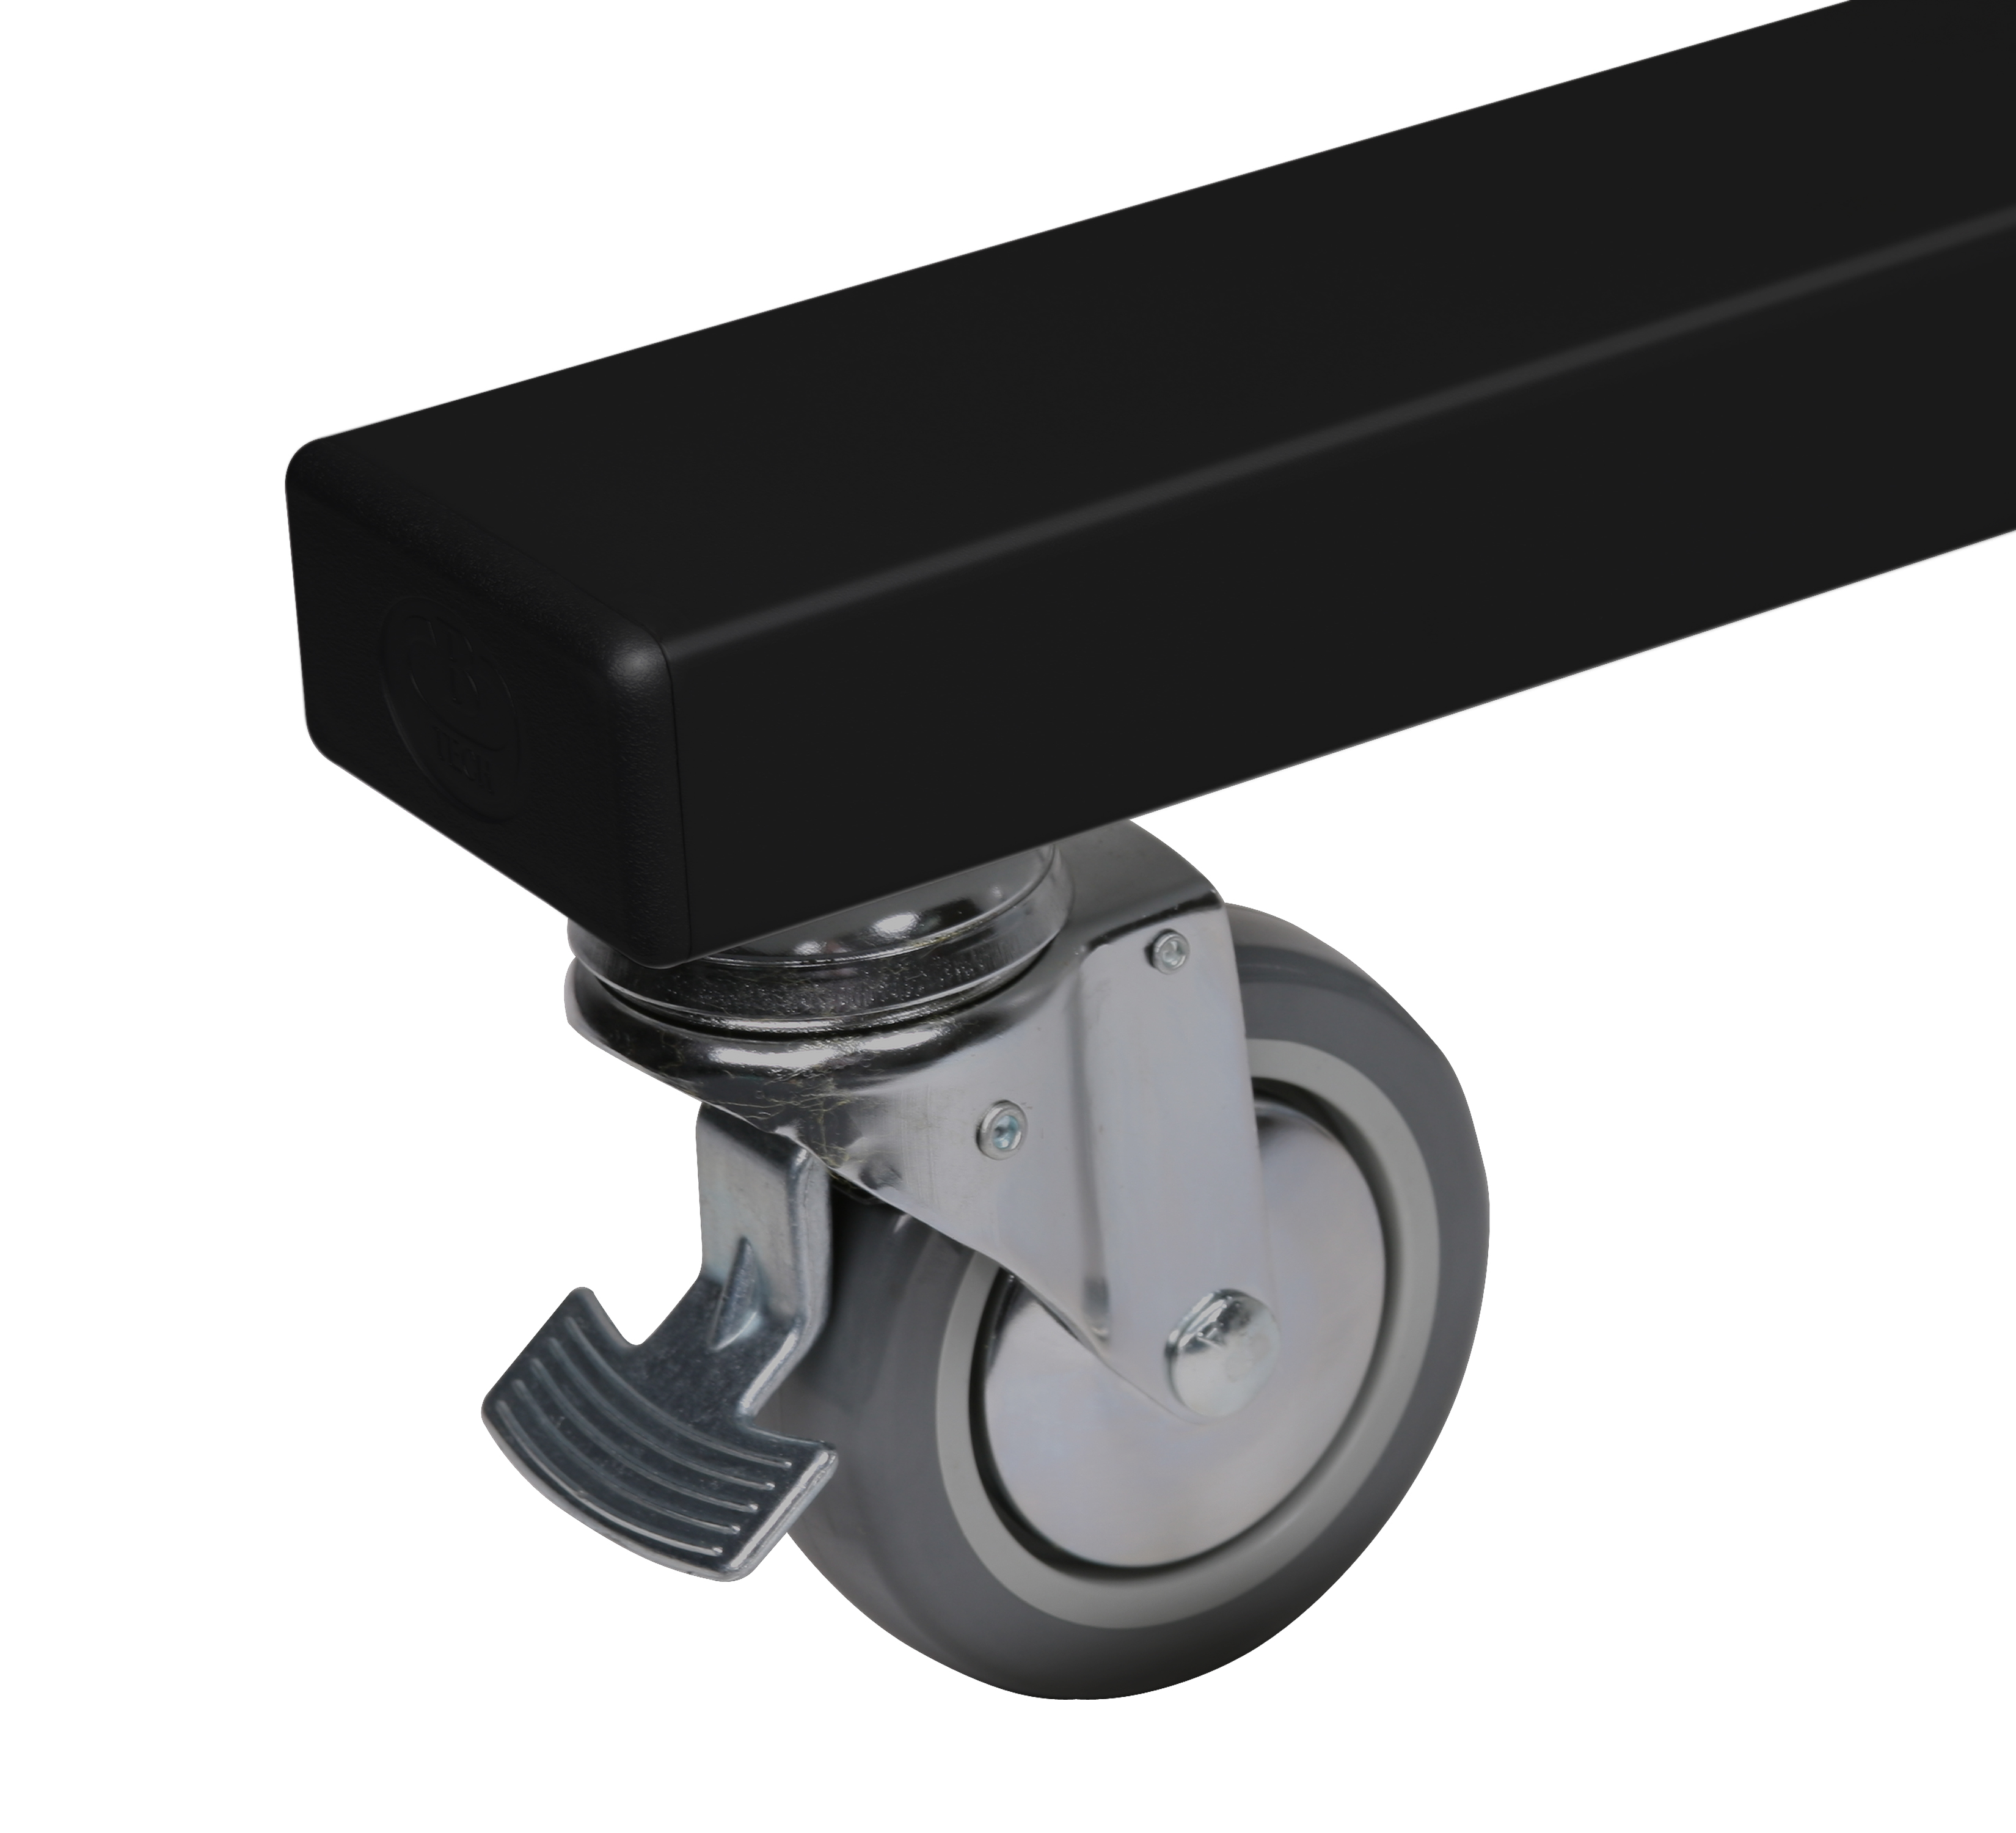 B-TECH SystemX Videokonferenz Rollständer für Dual-Displays nebeneinander mit Kameraablage (VESA 600 x 400) - 1.5m Ø60mm Poles